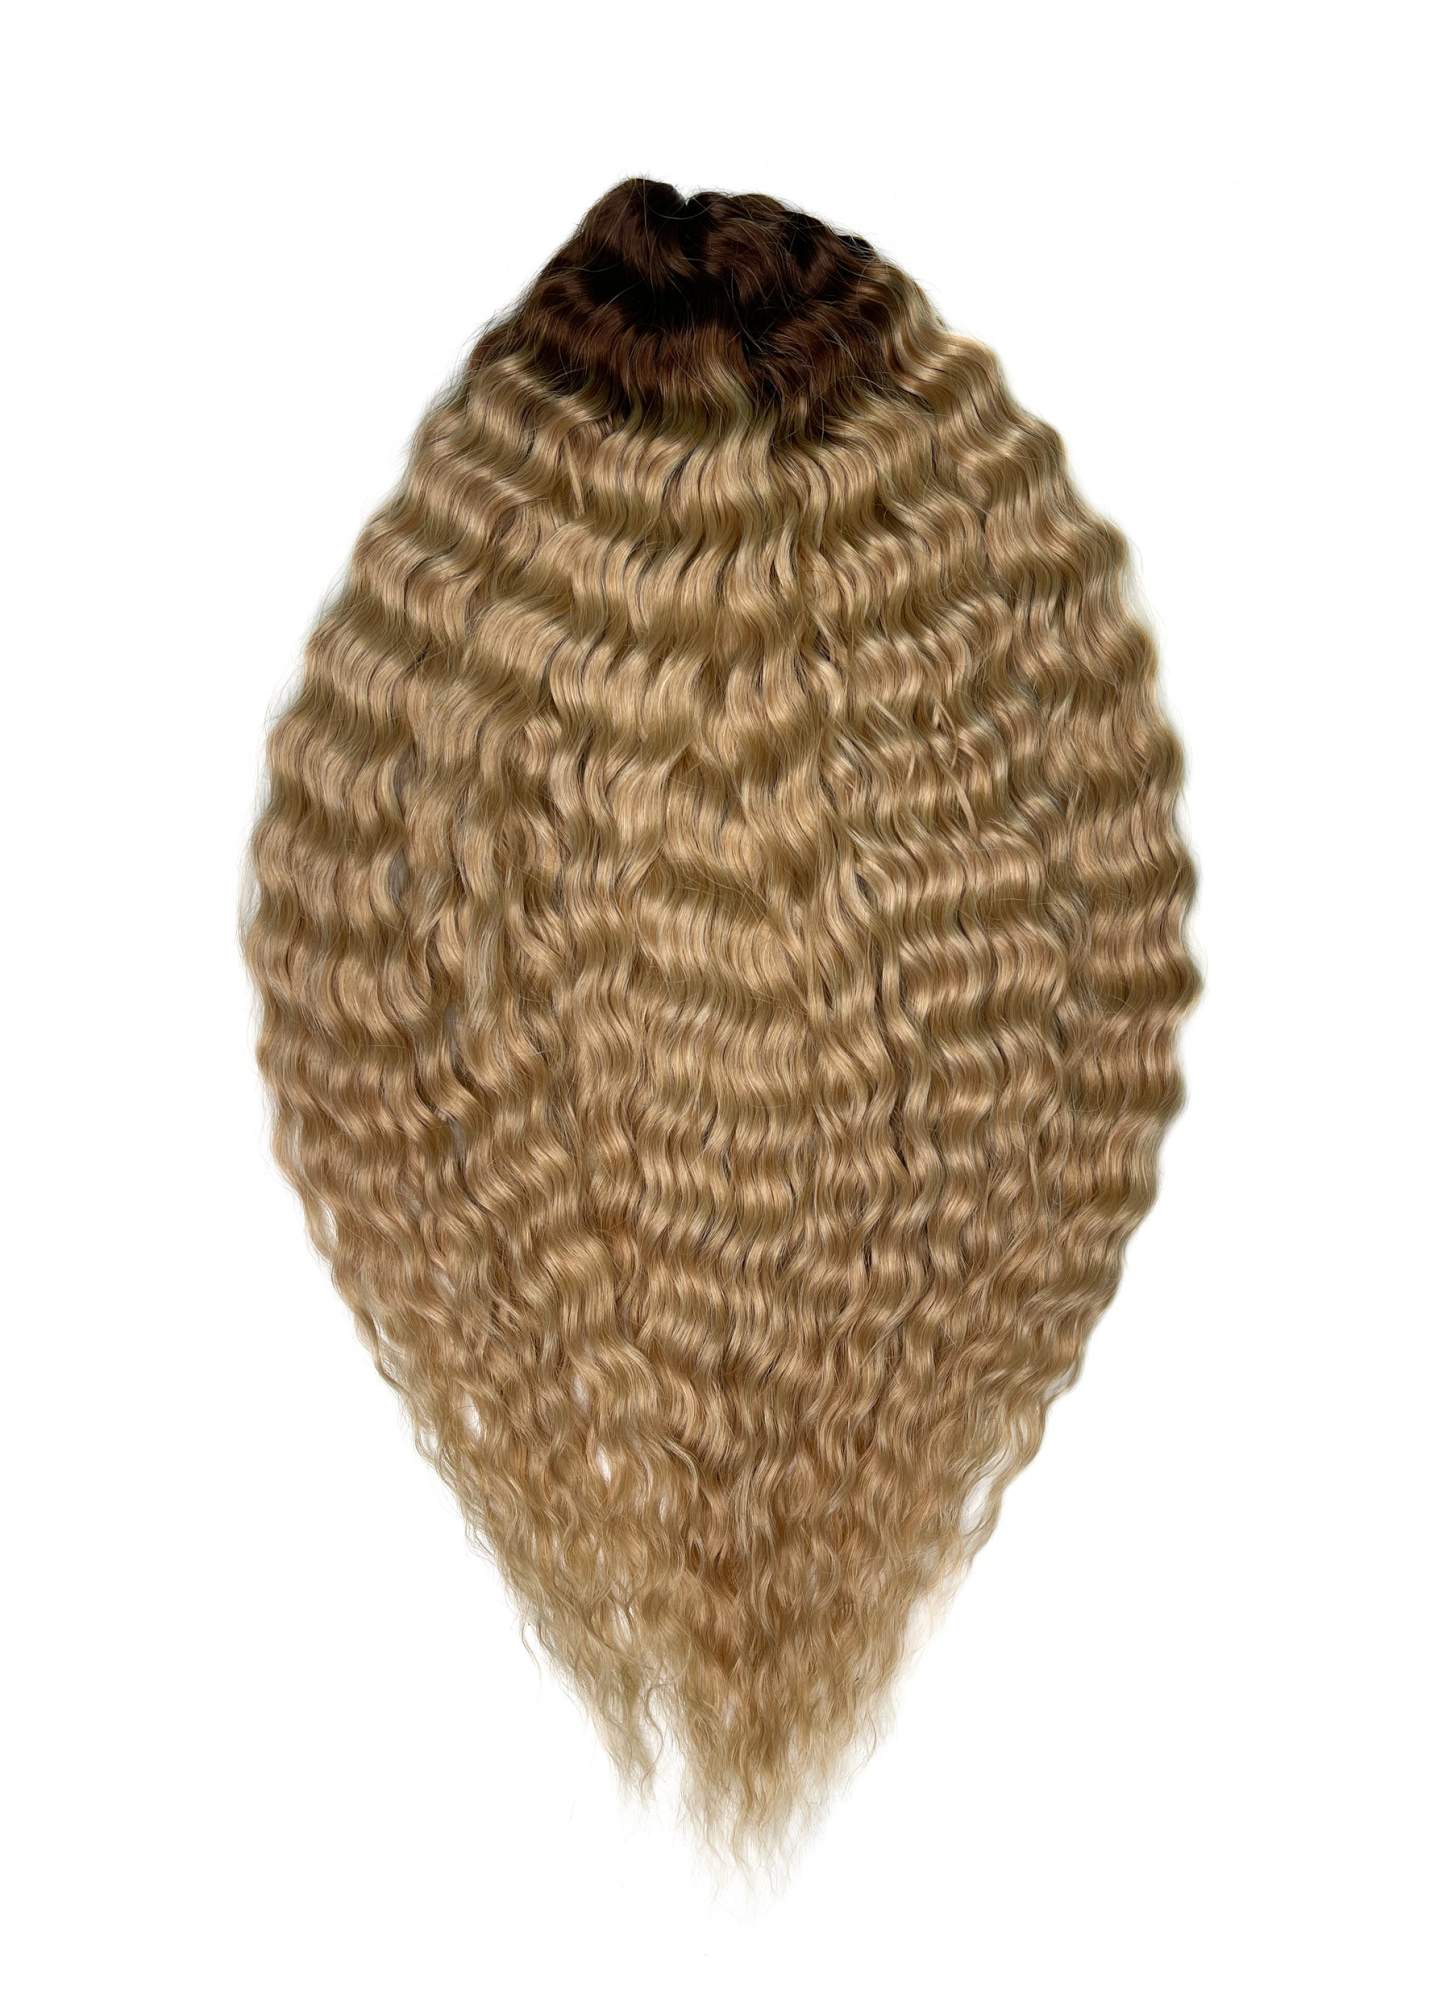 Афрокудри для плетения волос Ariel цвет TT-linen 55 русый длина 55см вес 300г резиночки для плетения браслетов rainbow loom коллекция перламутр розовый лимонад